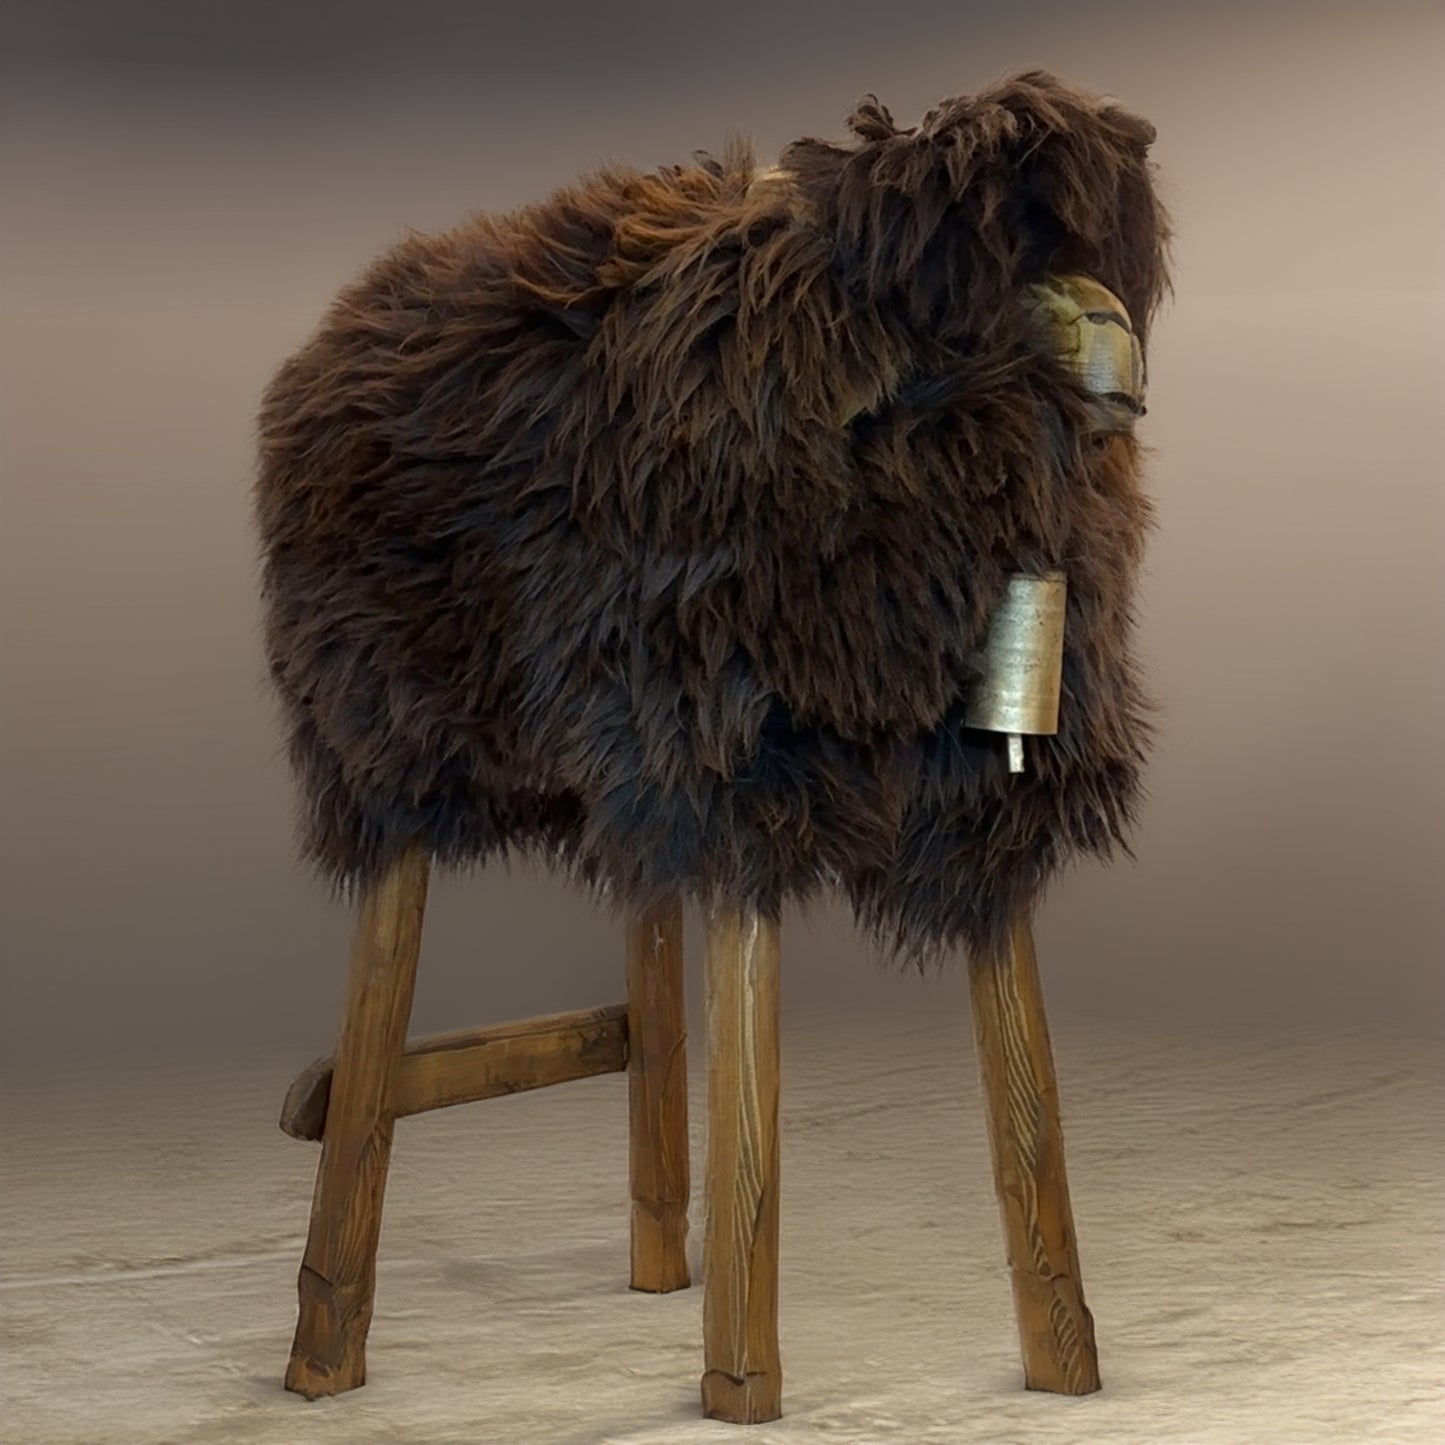 Banqueta de bar ➳ Berta, a garota selvagem ➳ urso marrom marrom designer animal banqueta ovelha